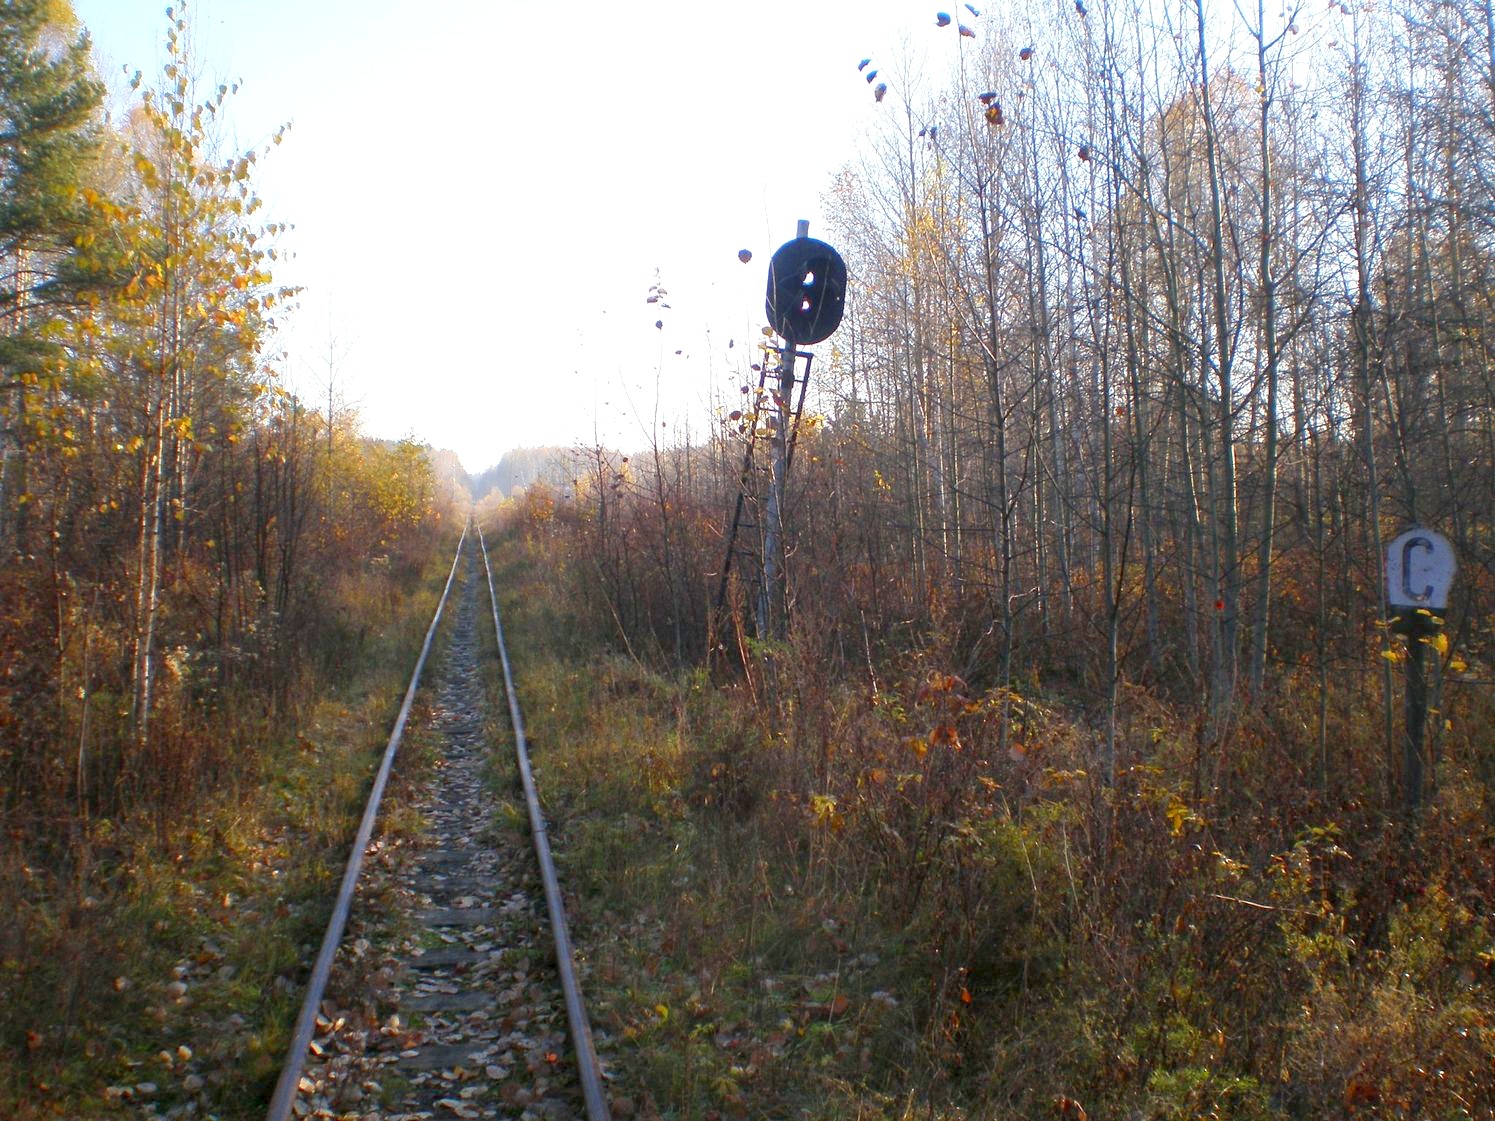 Висимо-Уткинская узкоколейная железная дорога  — фотографии, сделанные в 2007 году (часть 20)